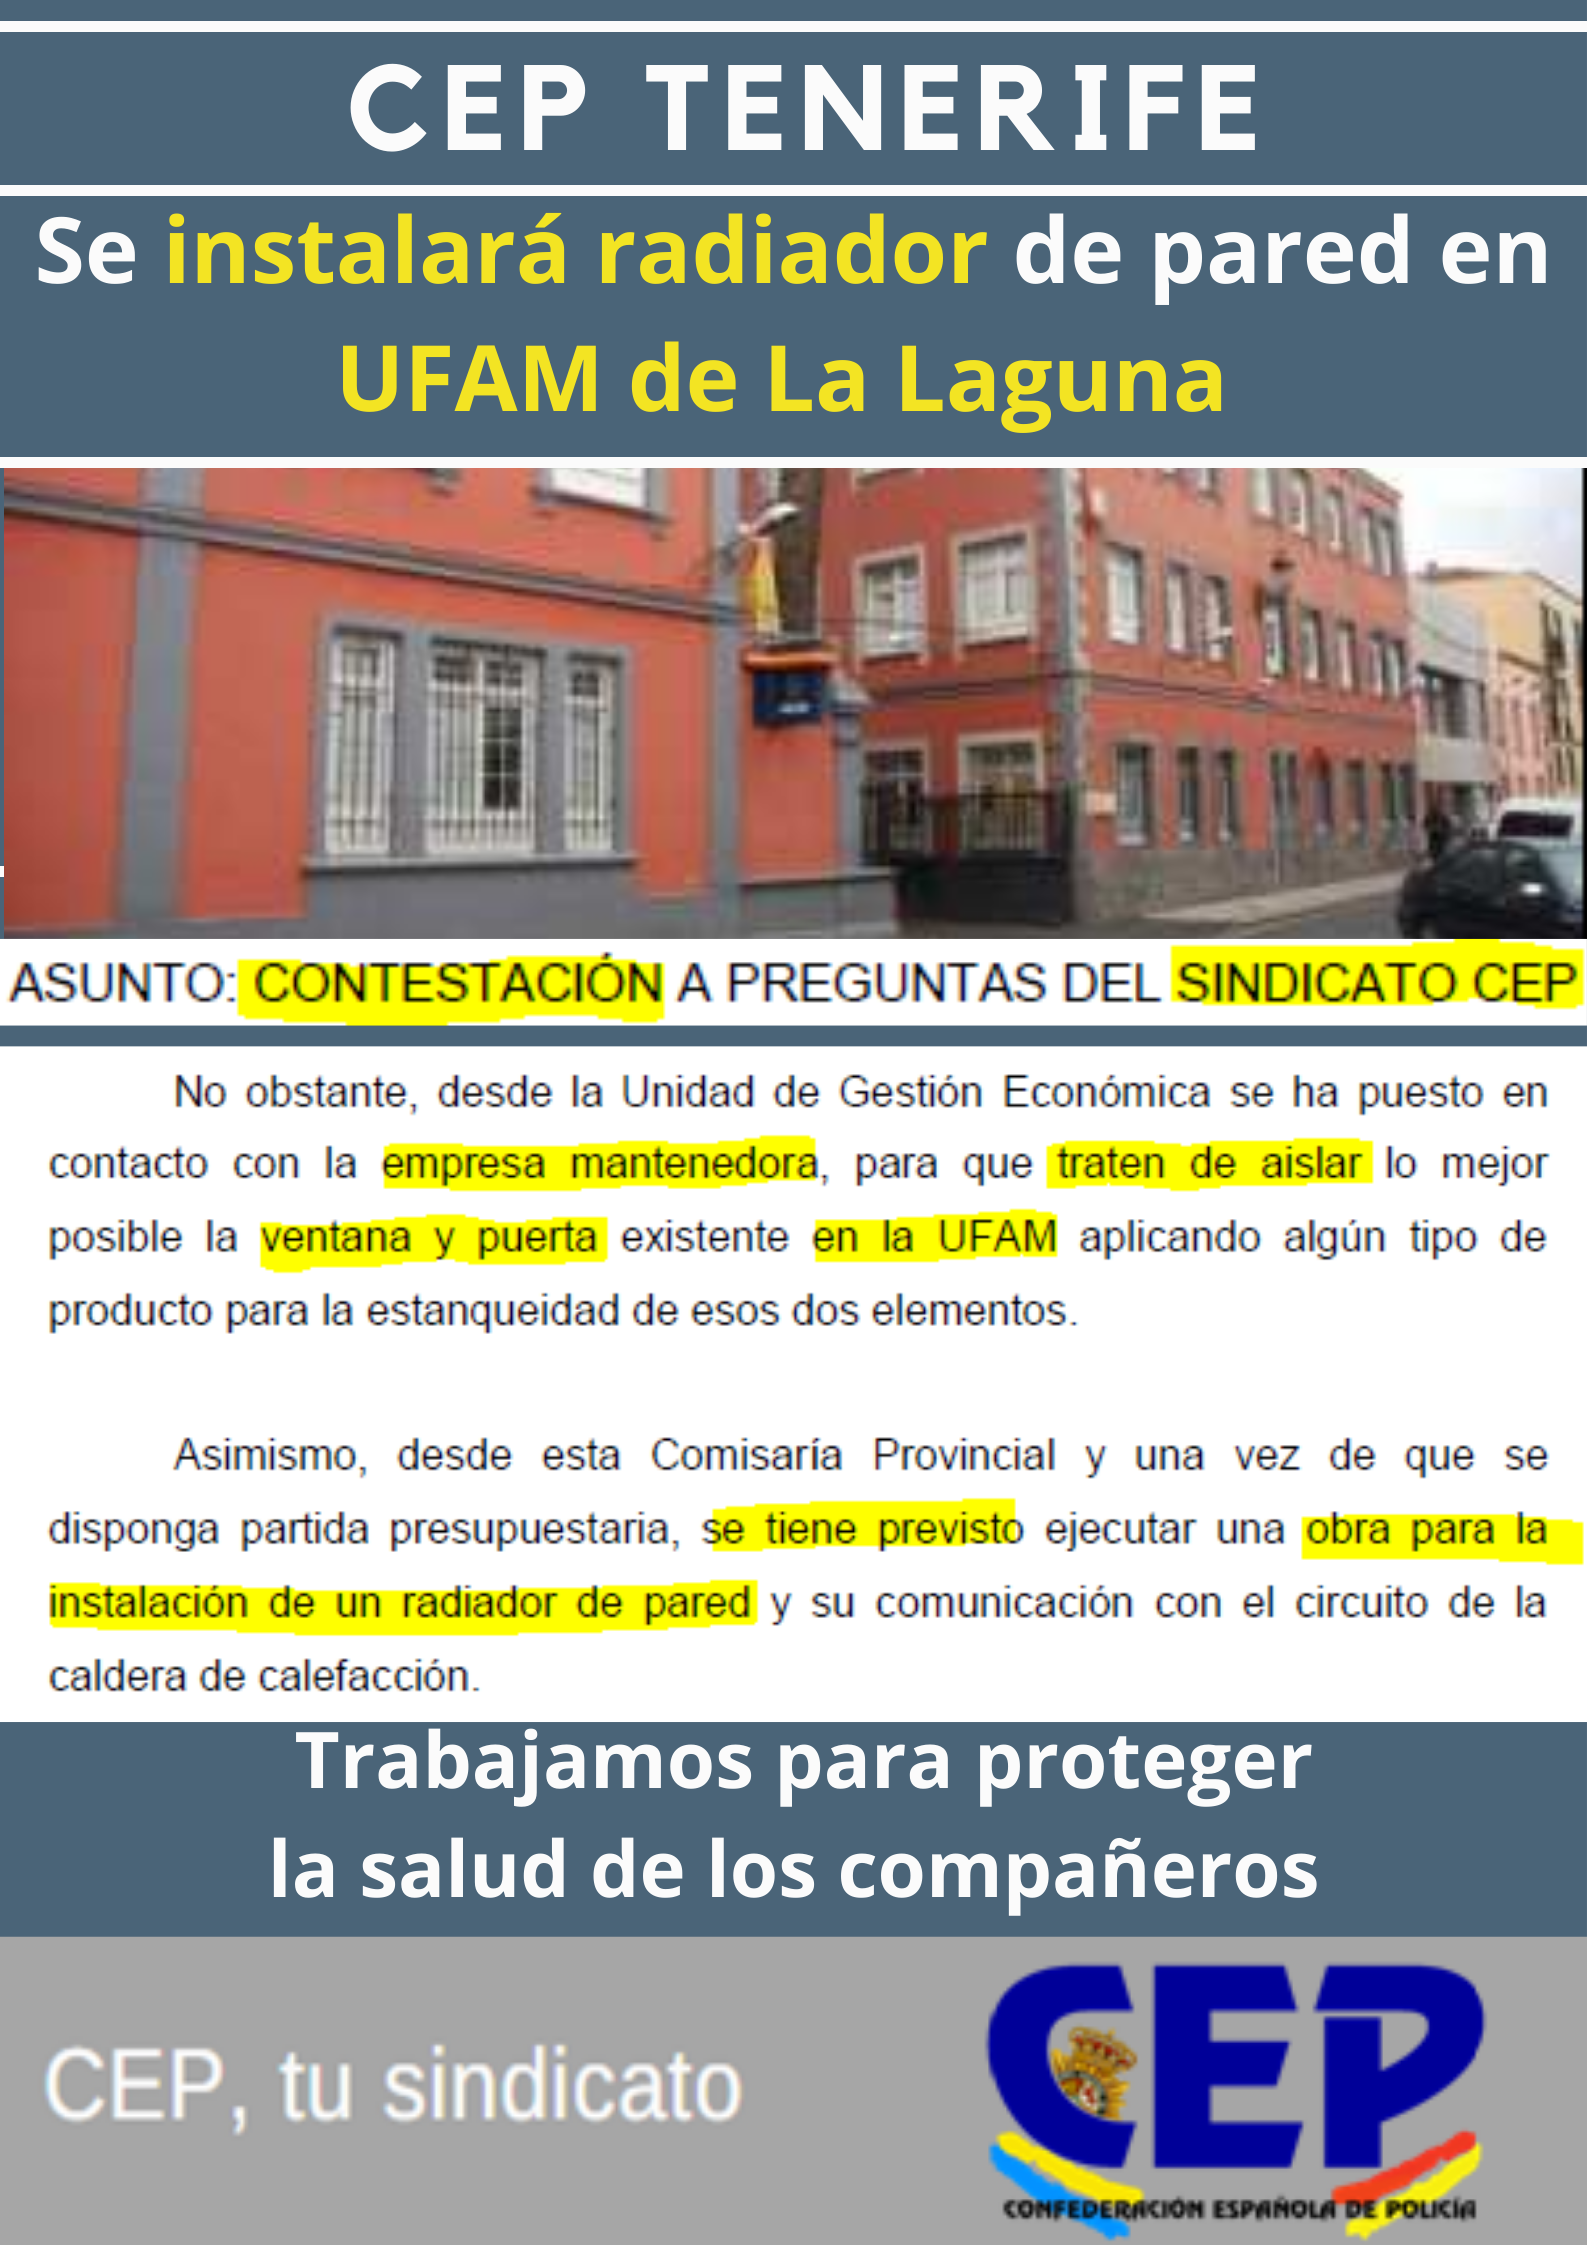 Se instalará radiador de pared en UFAM La Laguna